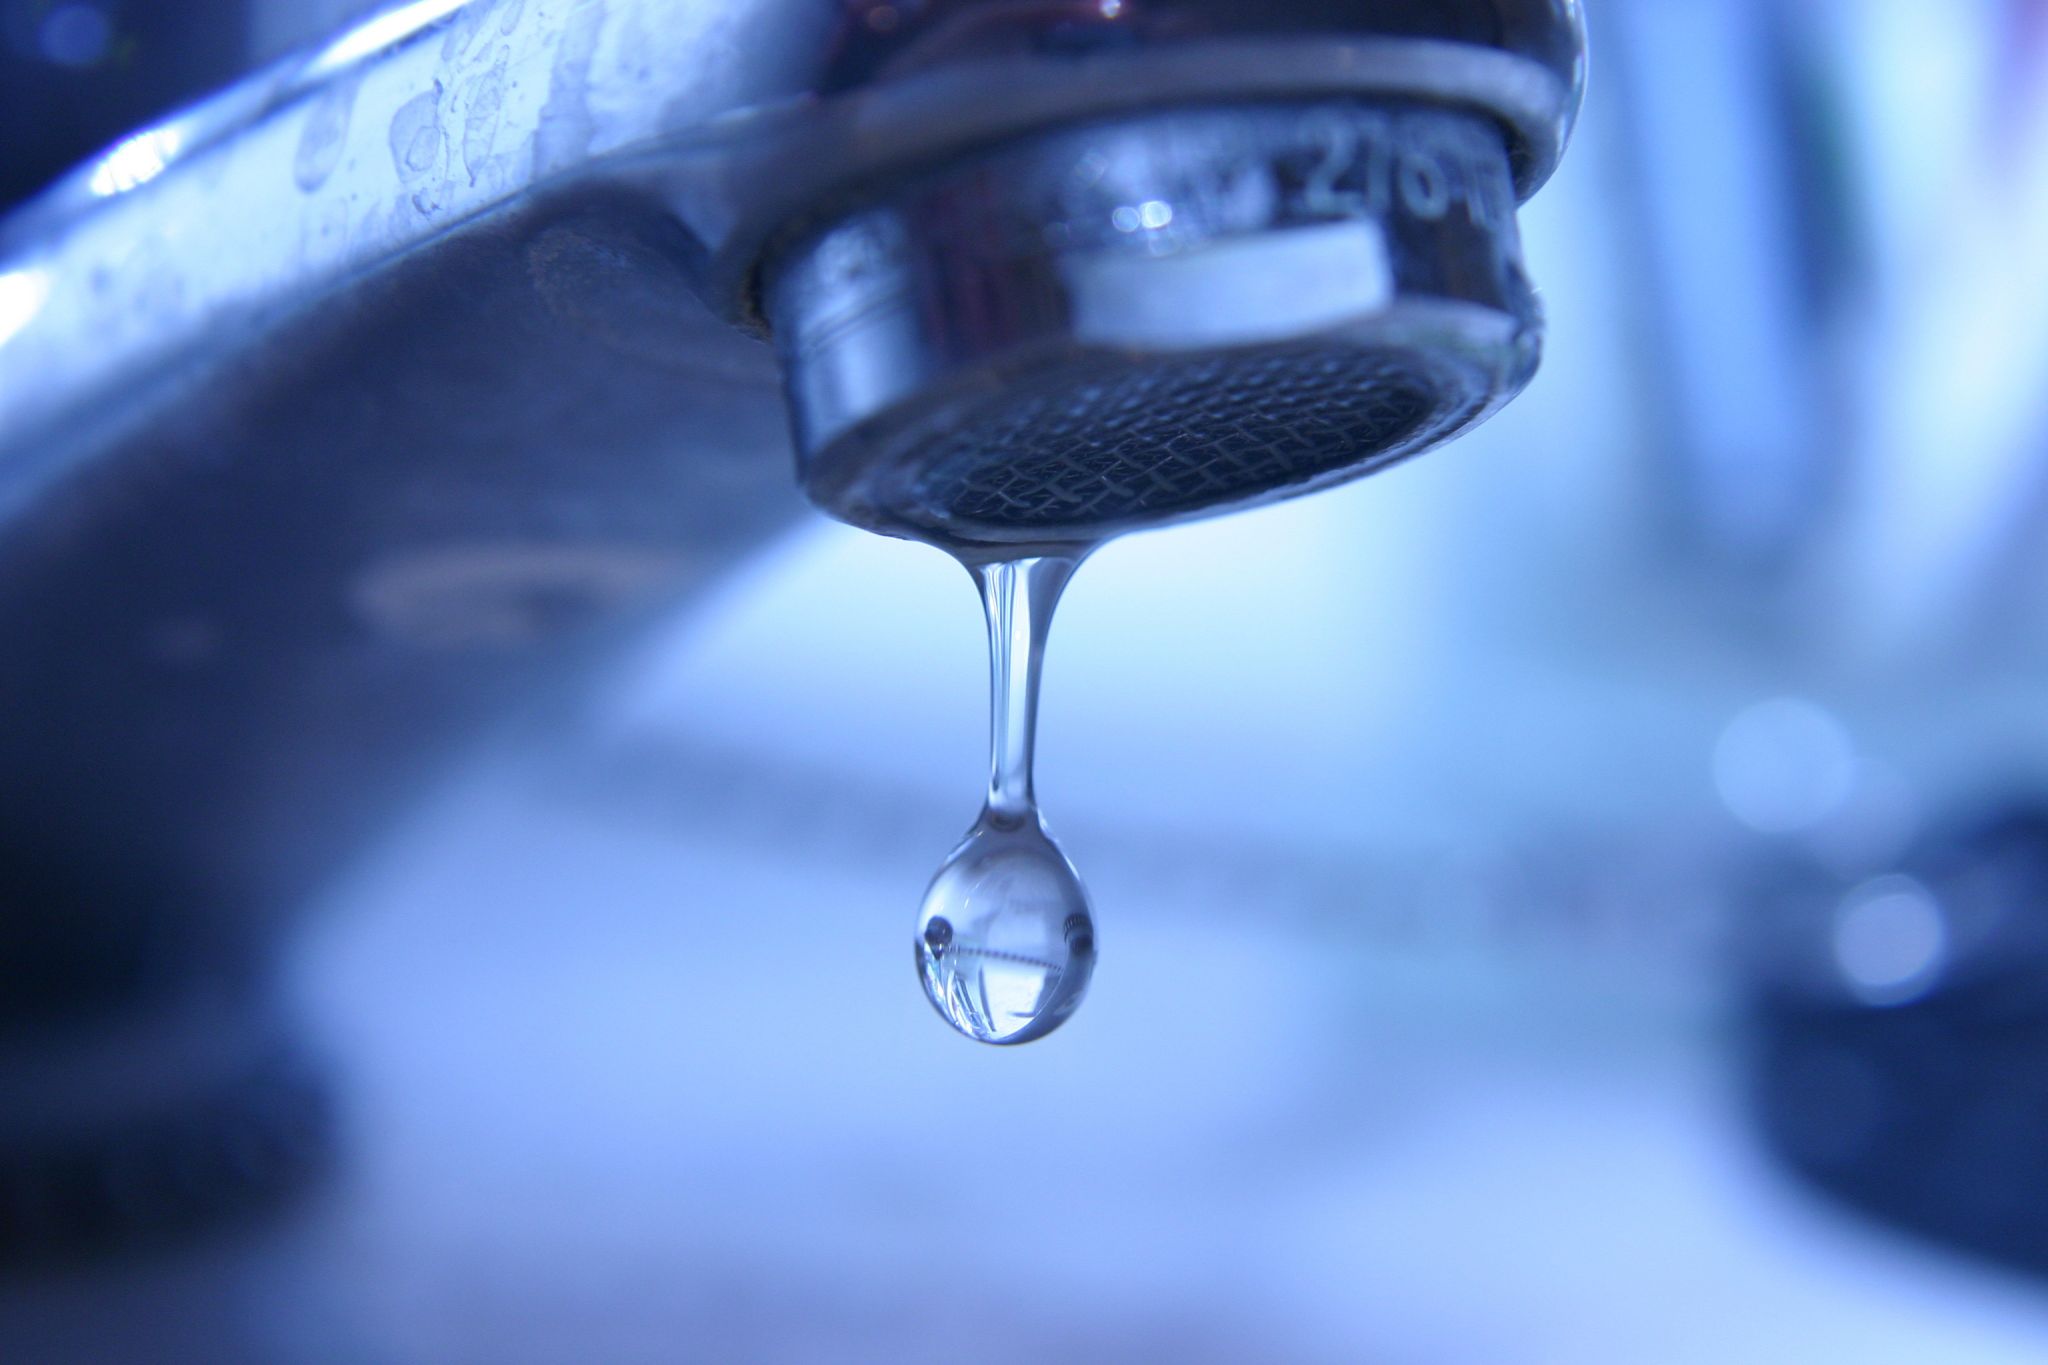 L’accès à l’eau potable est un problème mondial : une fuite ou un robinet mal fermé qui laisse échapper quelques gouttes peuvent gâcher des litres d’eau.